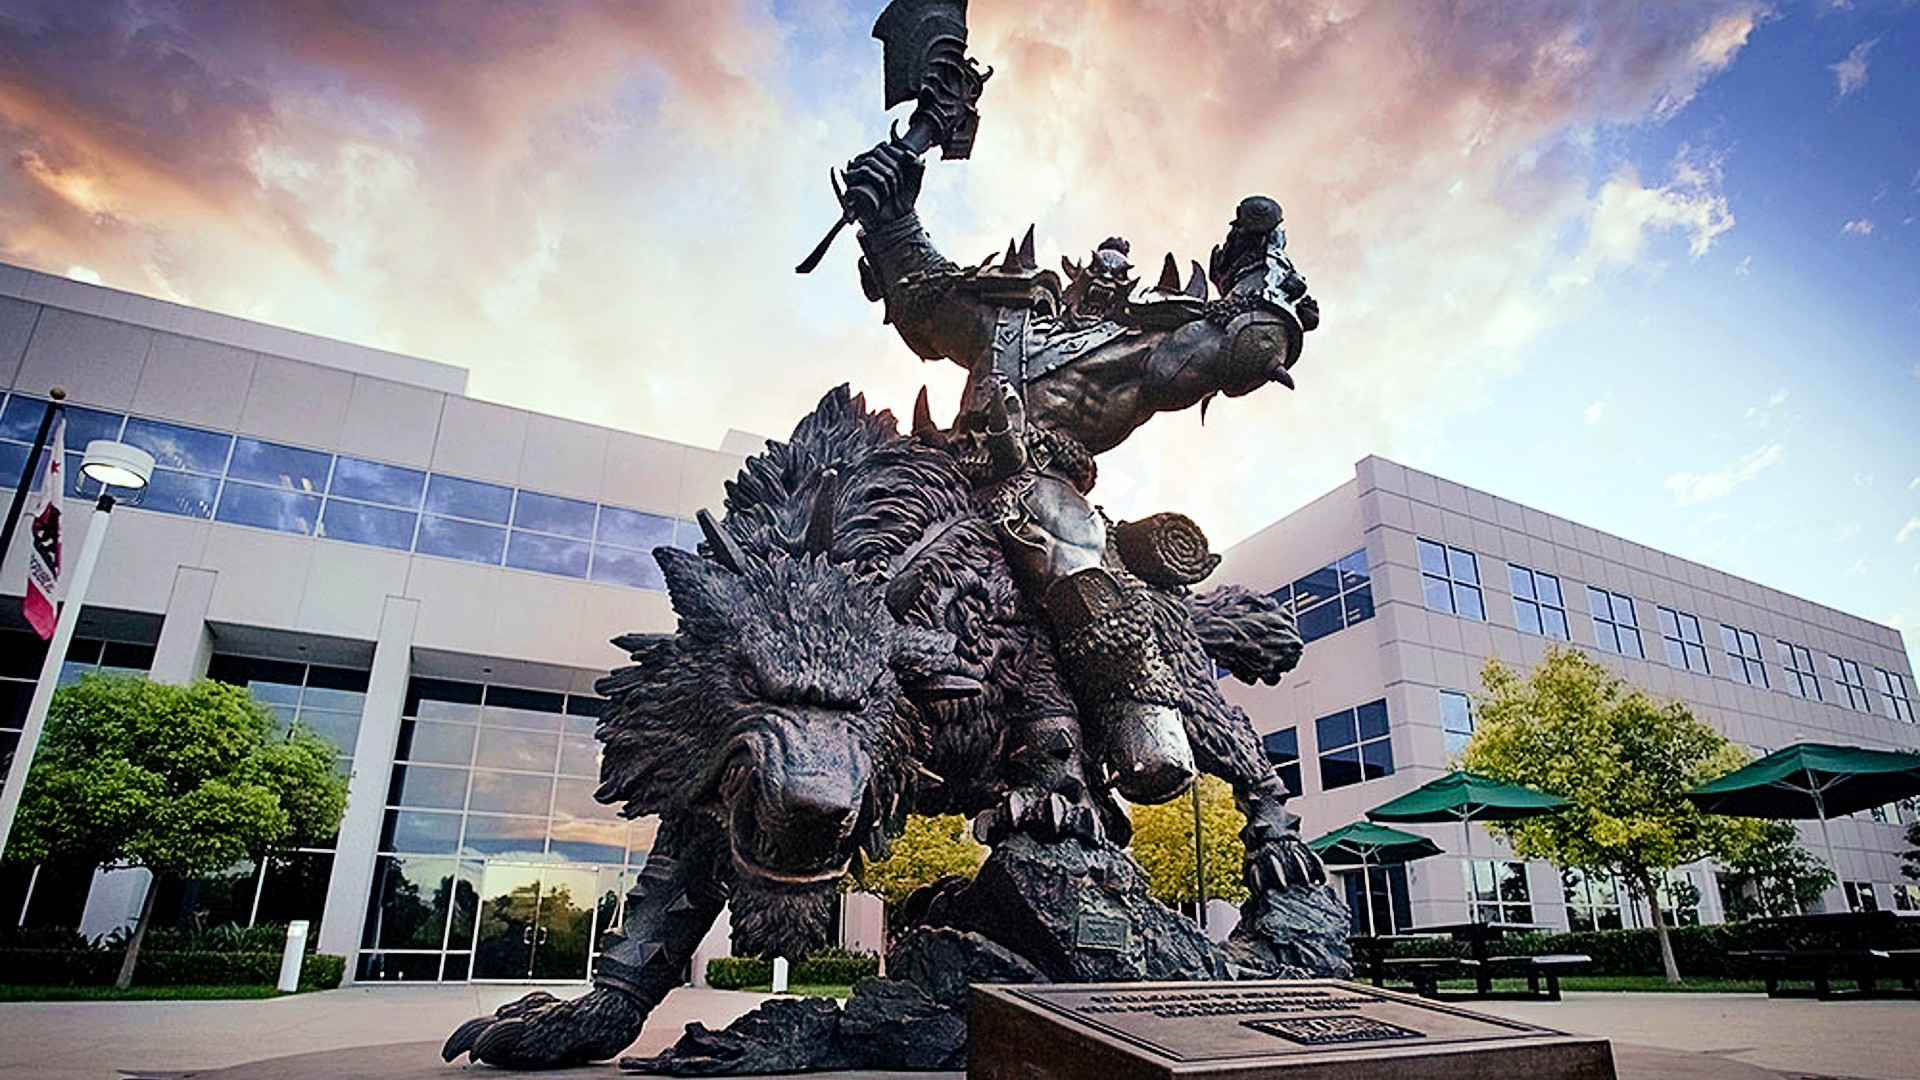 В ходе внутренних разбирательств в Activision Blizzard уволили более 20 сотрудников, утверждает компания